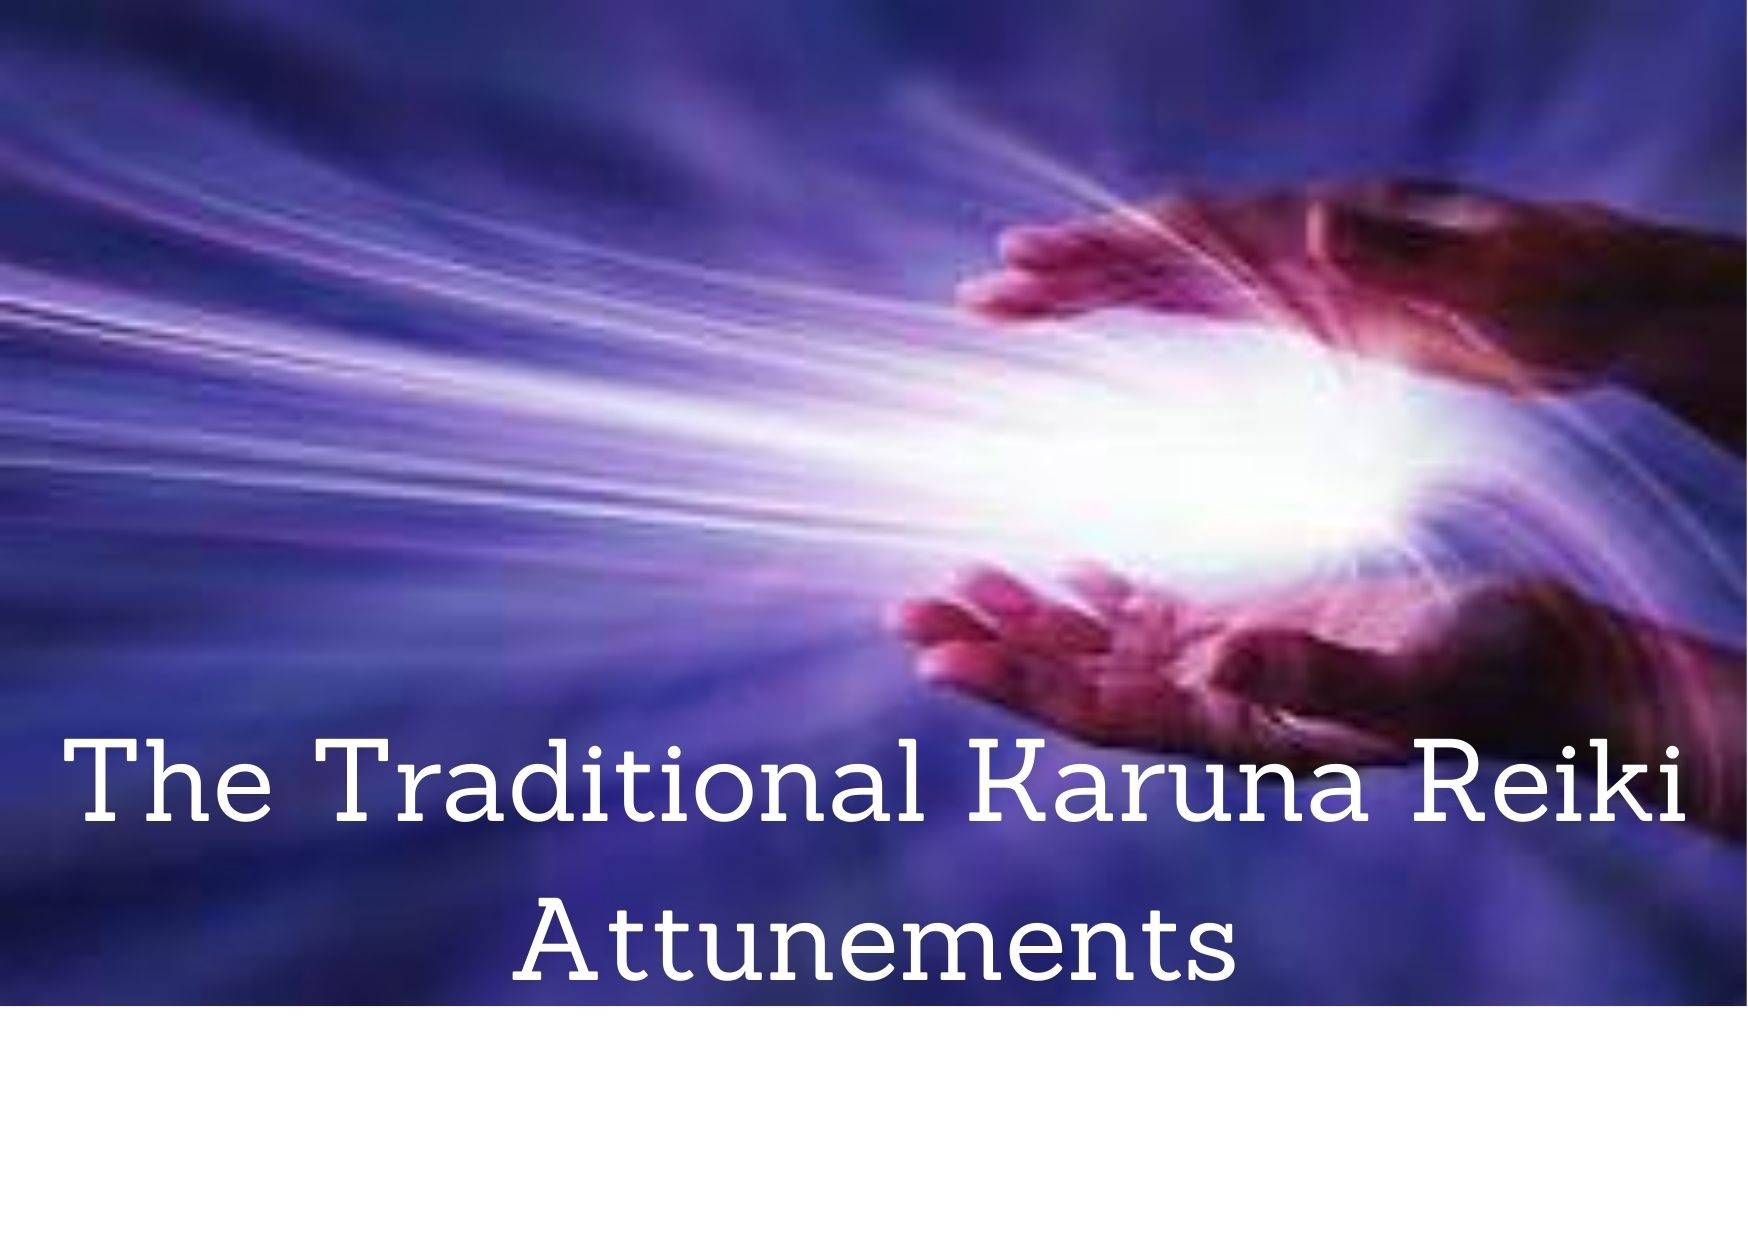 The Traditional Karuna Reiki Attunements